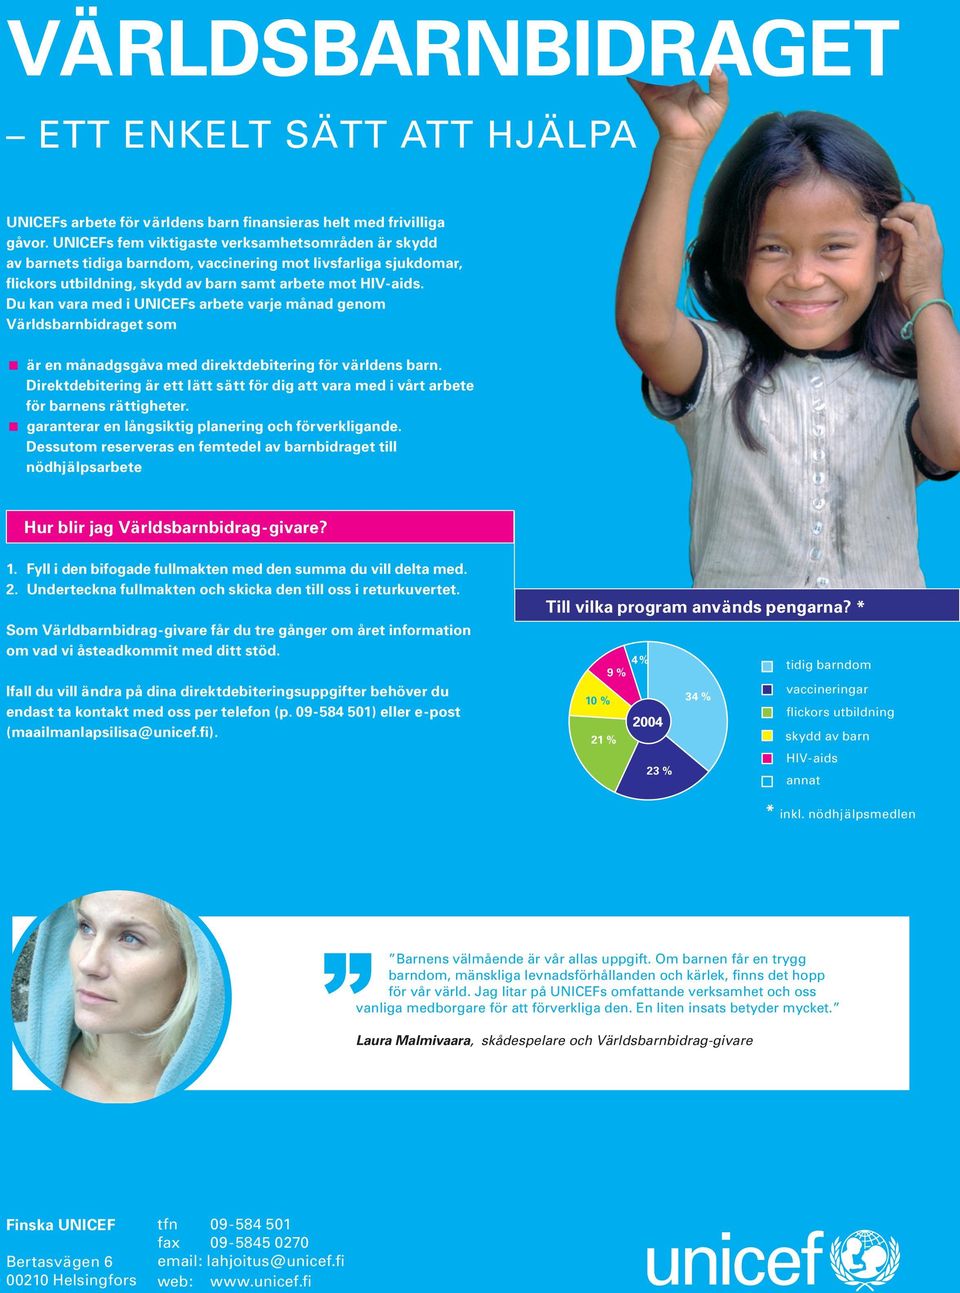 Du kan vara med i UNICEFs arbete varje månad genom Världsbarnbidraget som < är en månadgsgåva med direktdebitering för världens barn.